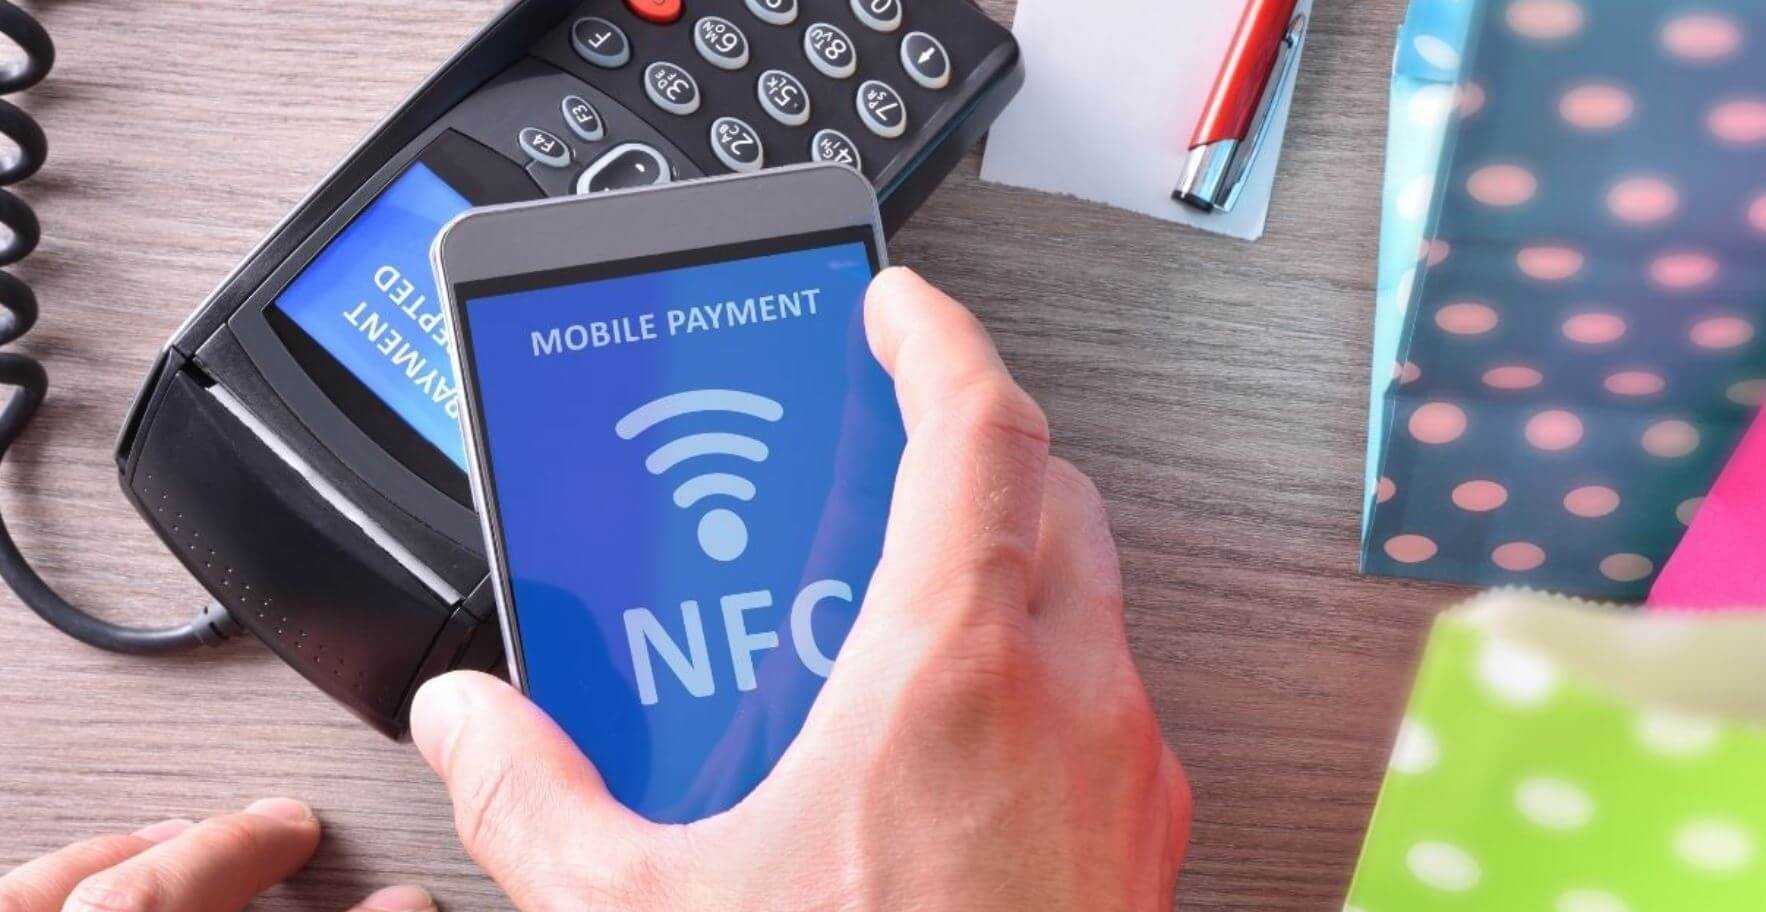 Nfc. как пользоваться и оплачивать с помощью модуля nfc.